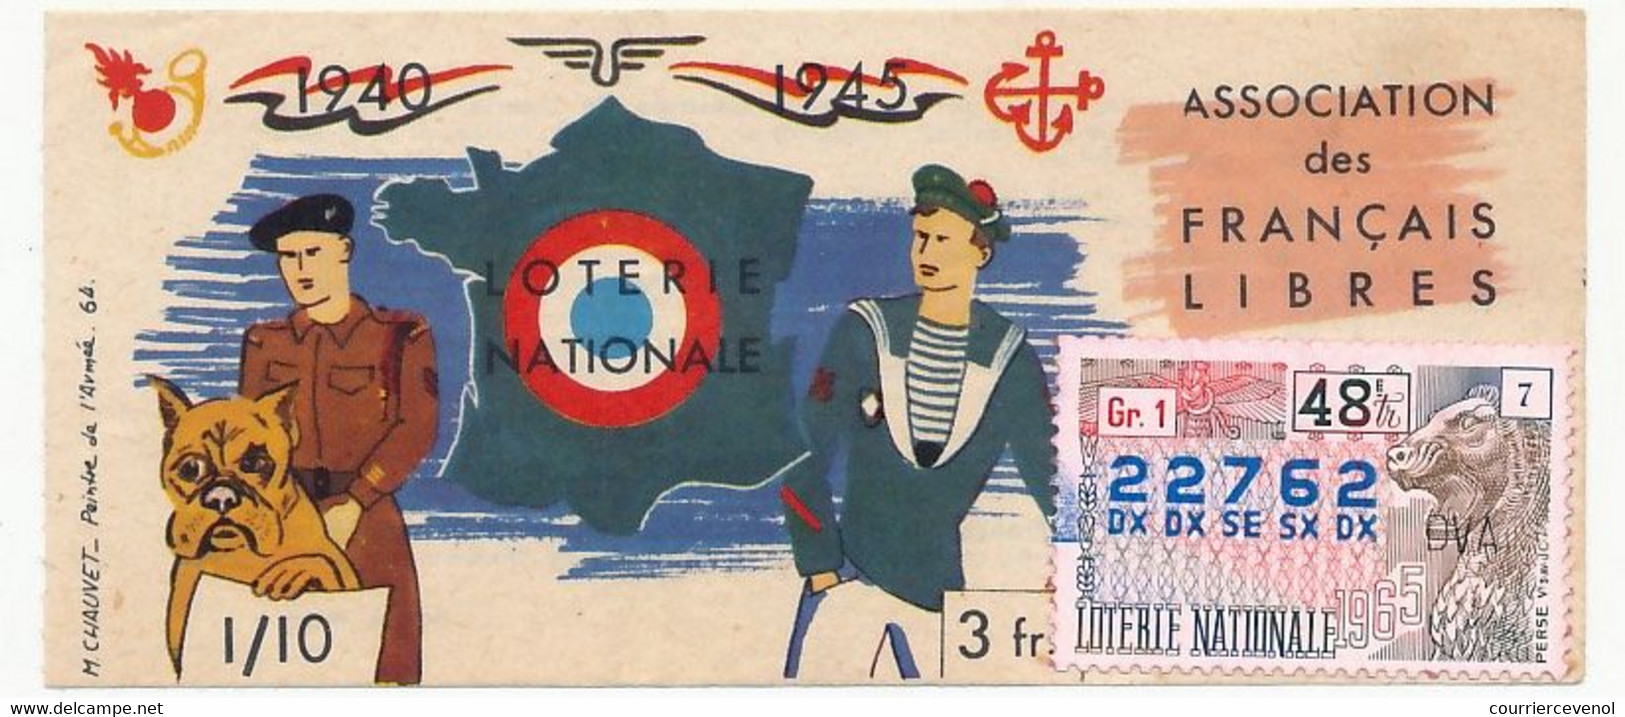 FRANCE - Loterie Nationale - Association Des Français Libres - 48eme Tranche - 1965 - Billets De Loterie